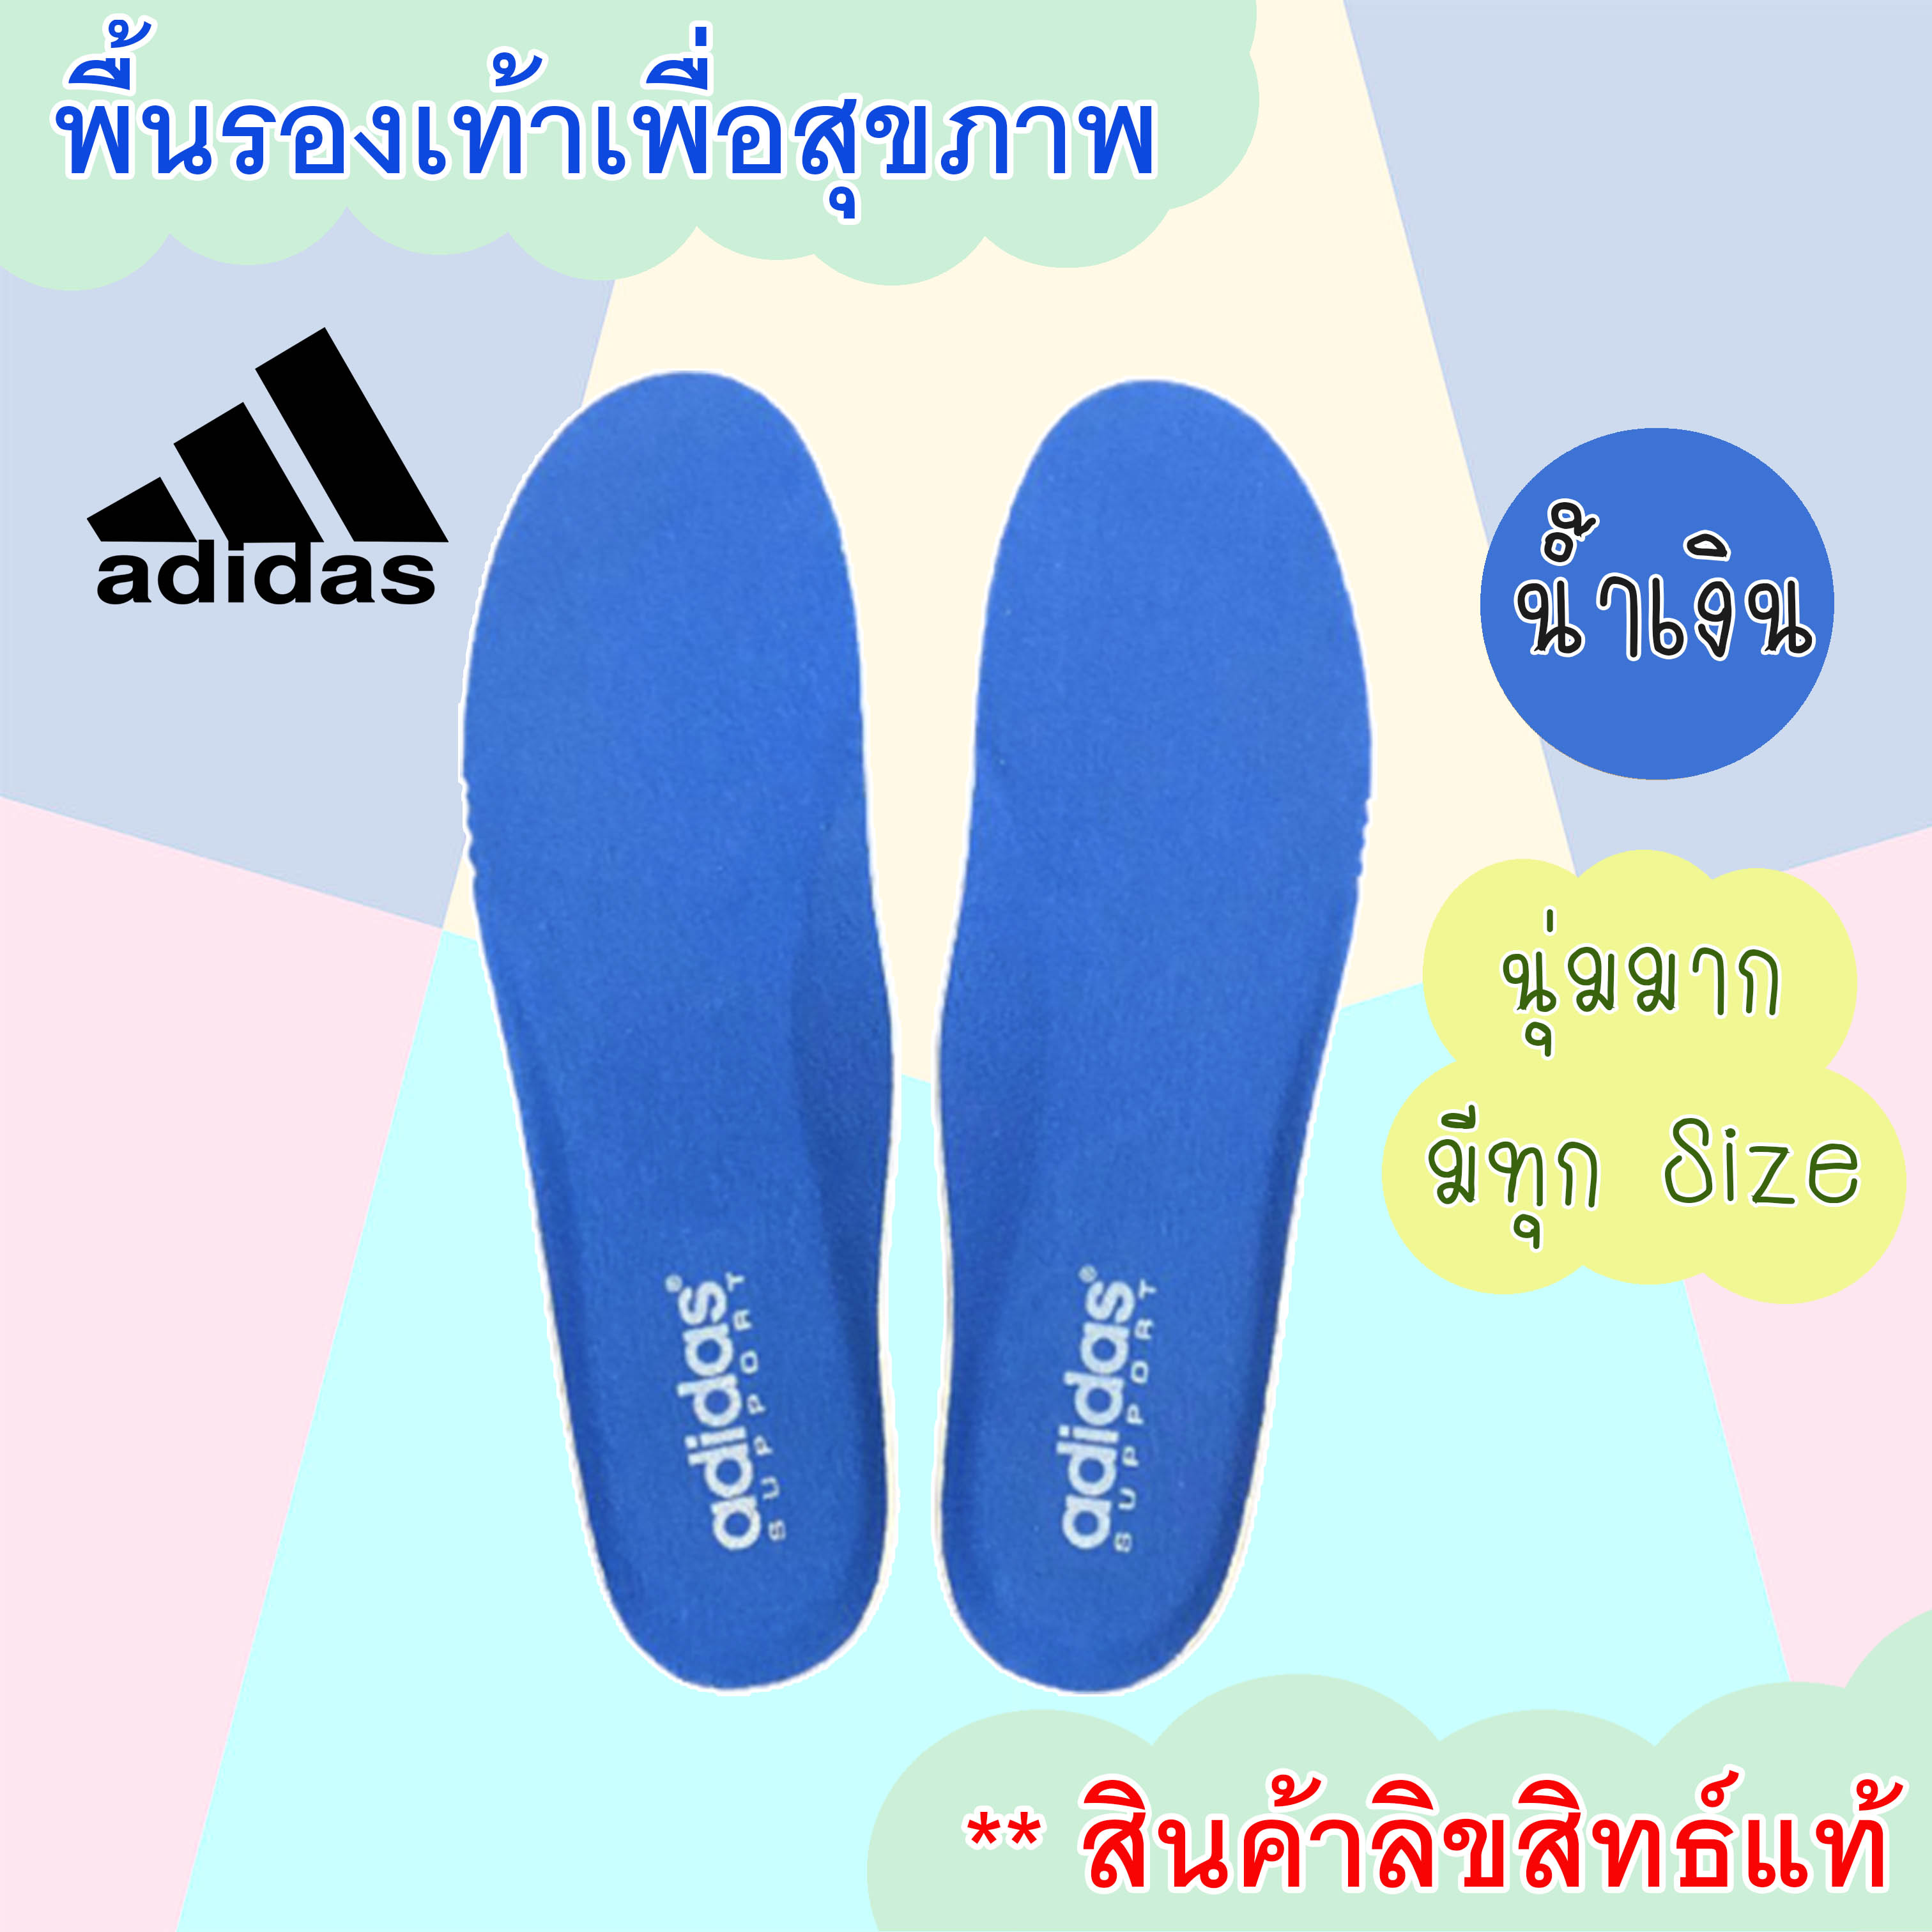 Adidas พื้นรองเท้า แผ่นเสริมรองเท้า เพื่อสุขภาพ สีน้ำเงิน ของแท้100%